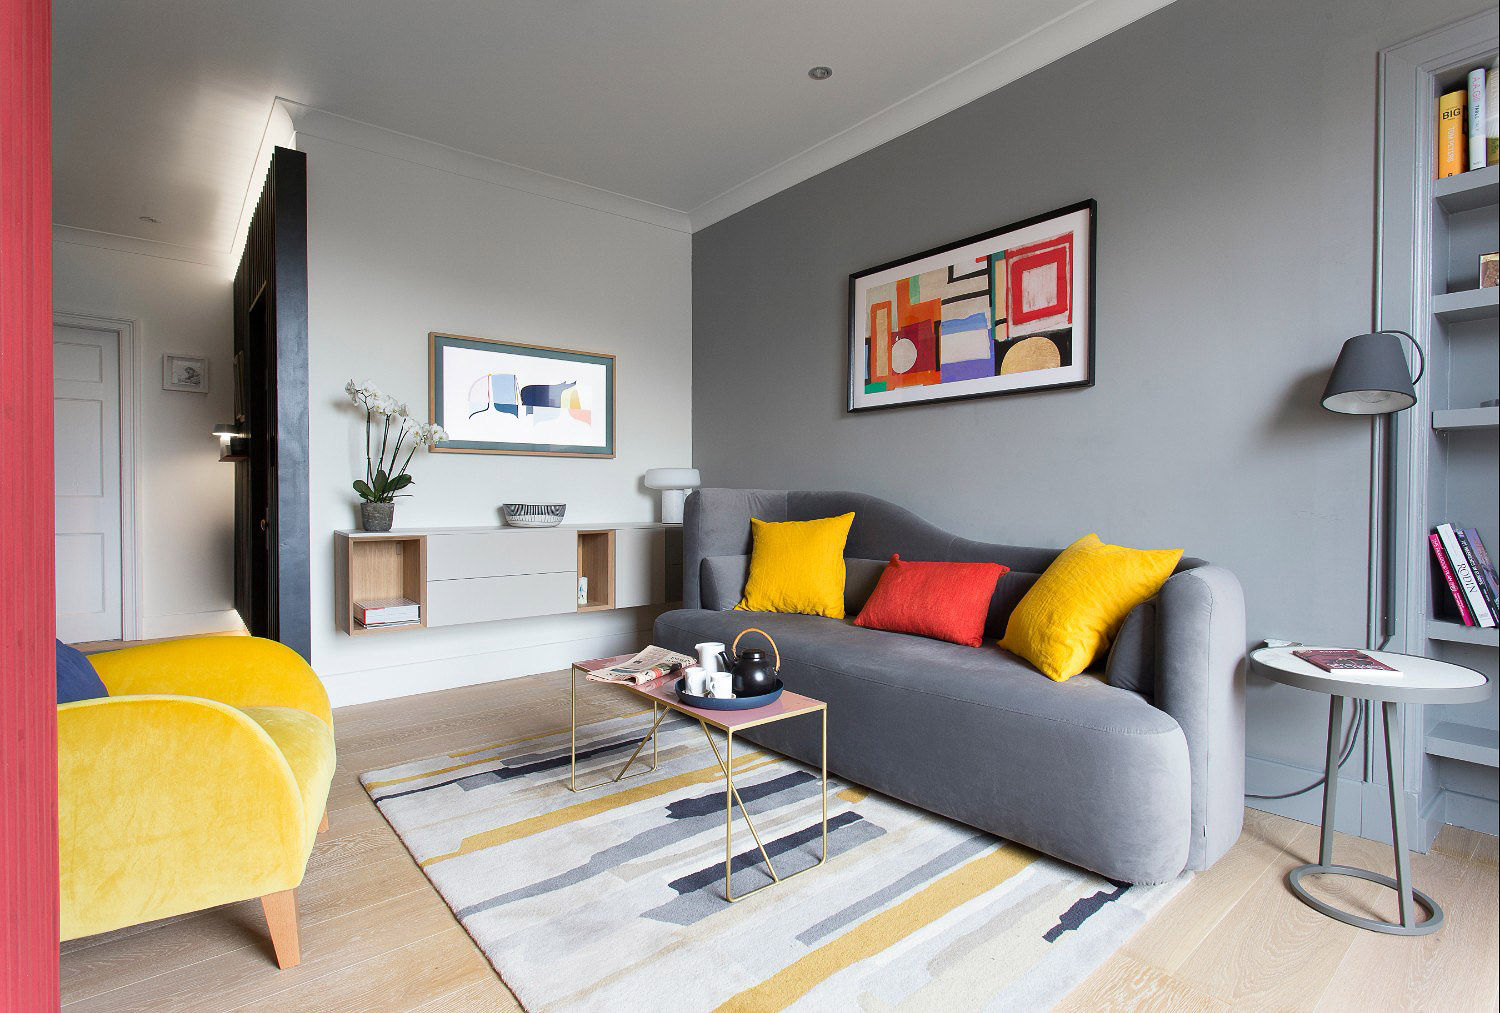 Living room John Wilson Design Salas de estar modernas greyroom,contemporary,modern